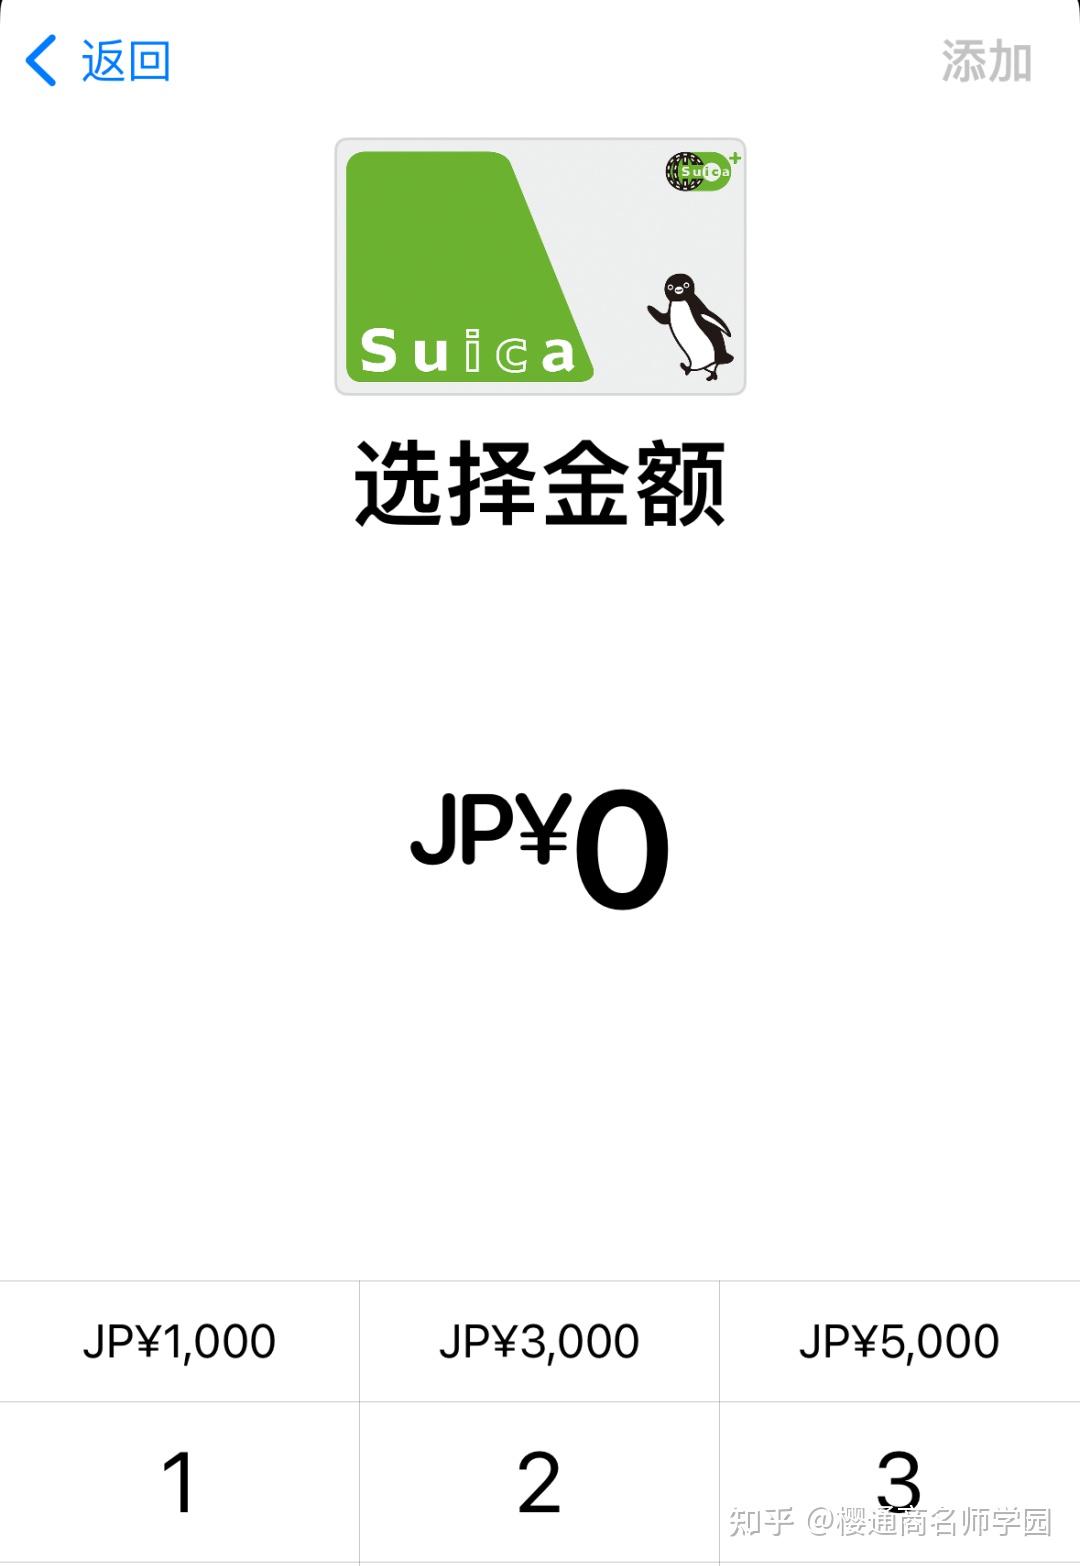 [全新] 日本西瓜卡現貨 SUICA 日本東京交通卡, 興趣及遊戲, 旅行, 旅遊 - 旅行必需品及用品 - Carousell